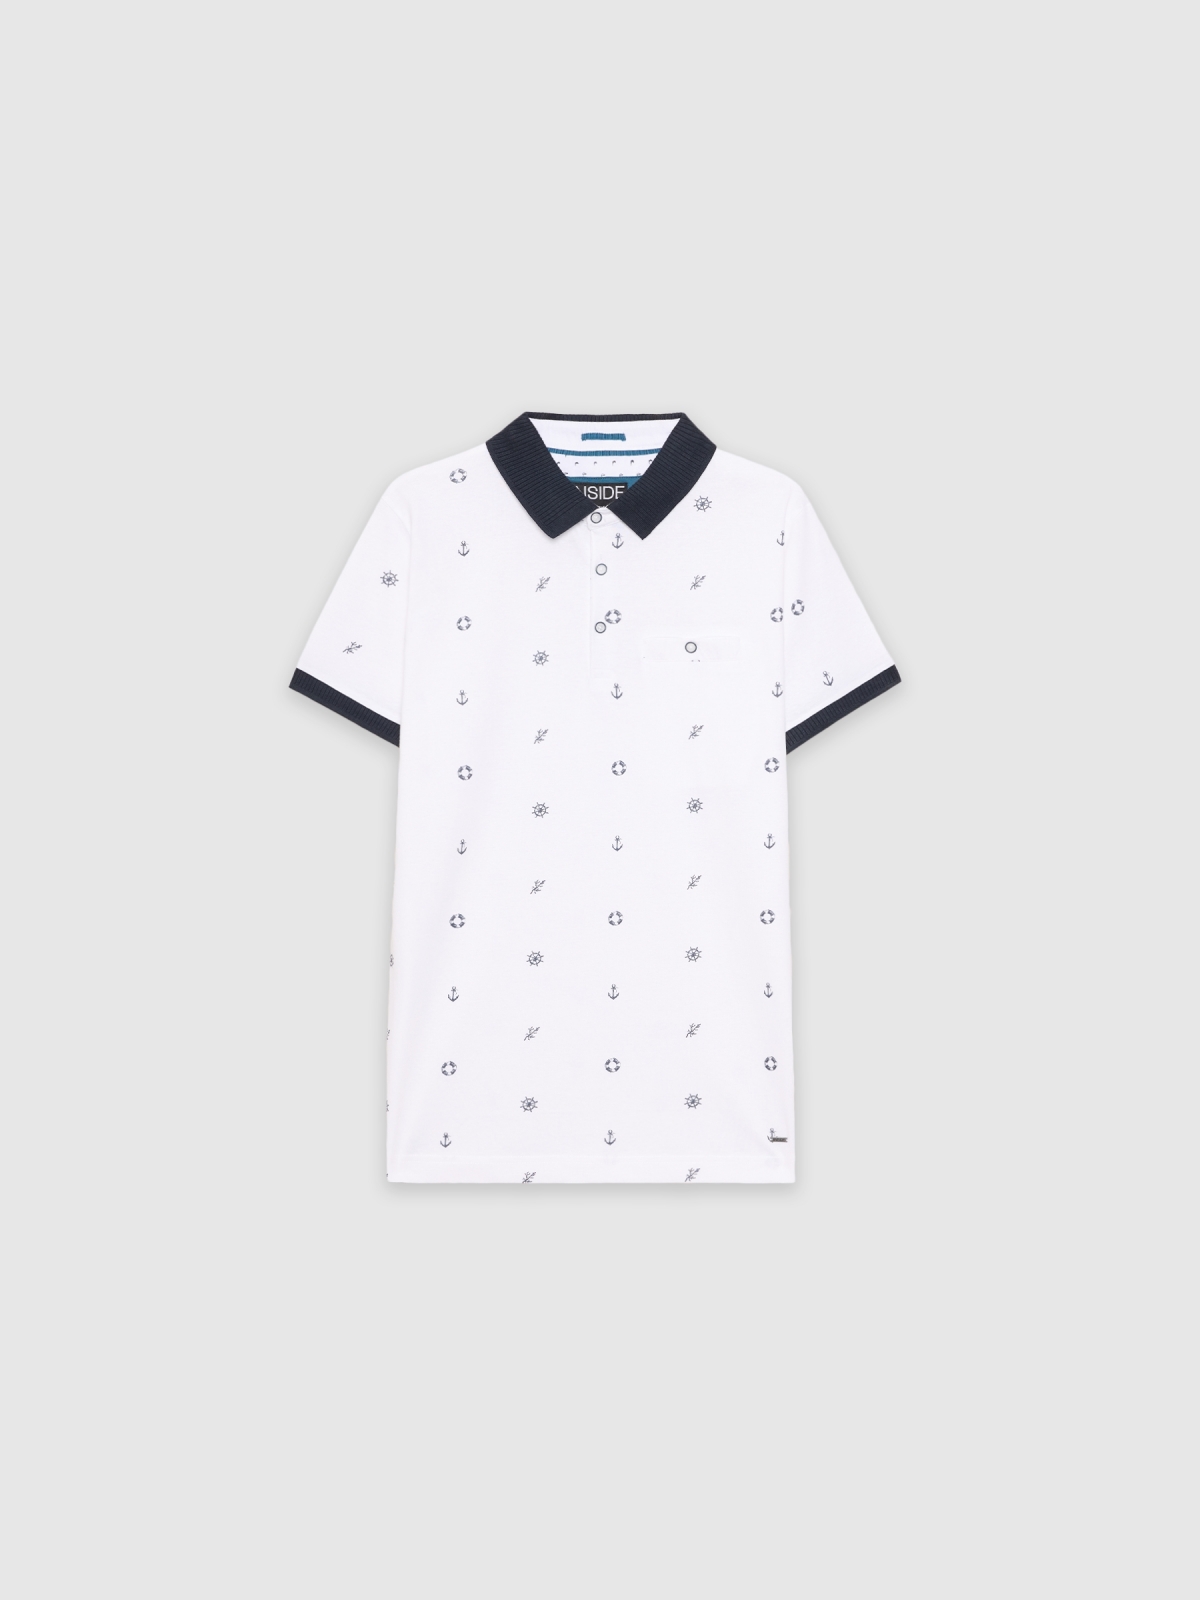  Sailor polo shirt white